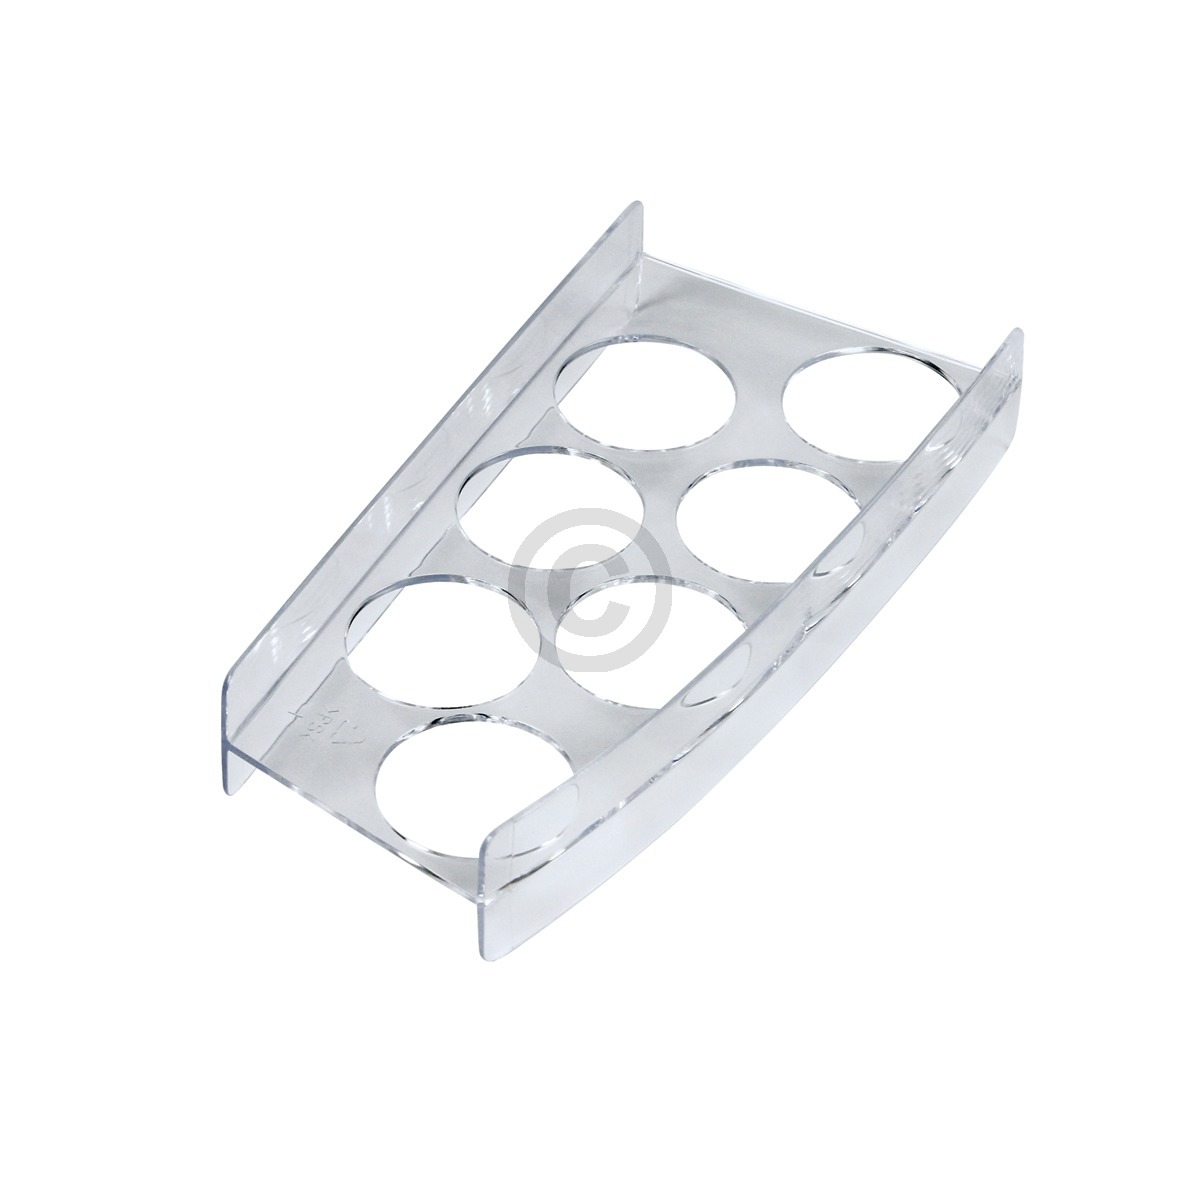 Eiereinsatz NEFF 00643979 200x97mm für 7 Eier in Kühlschranktüre KühlGefrierKombination